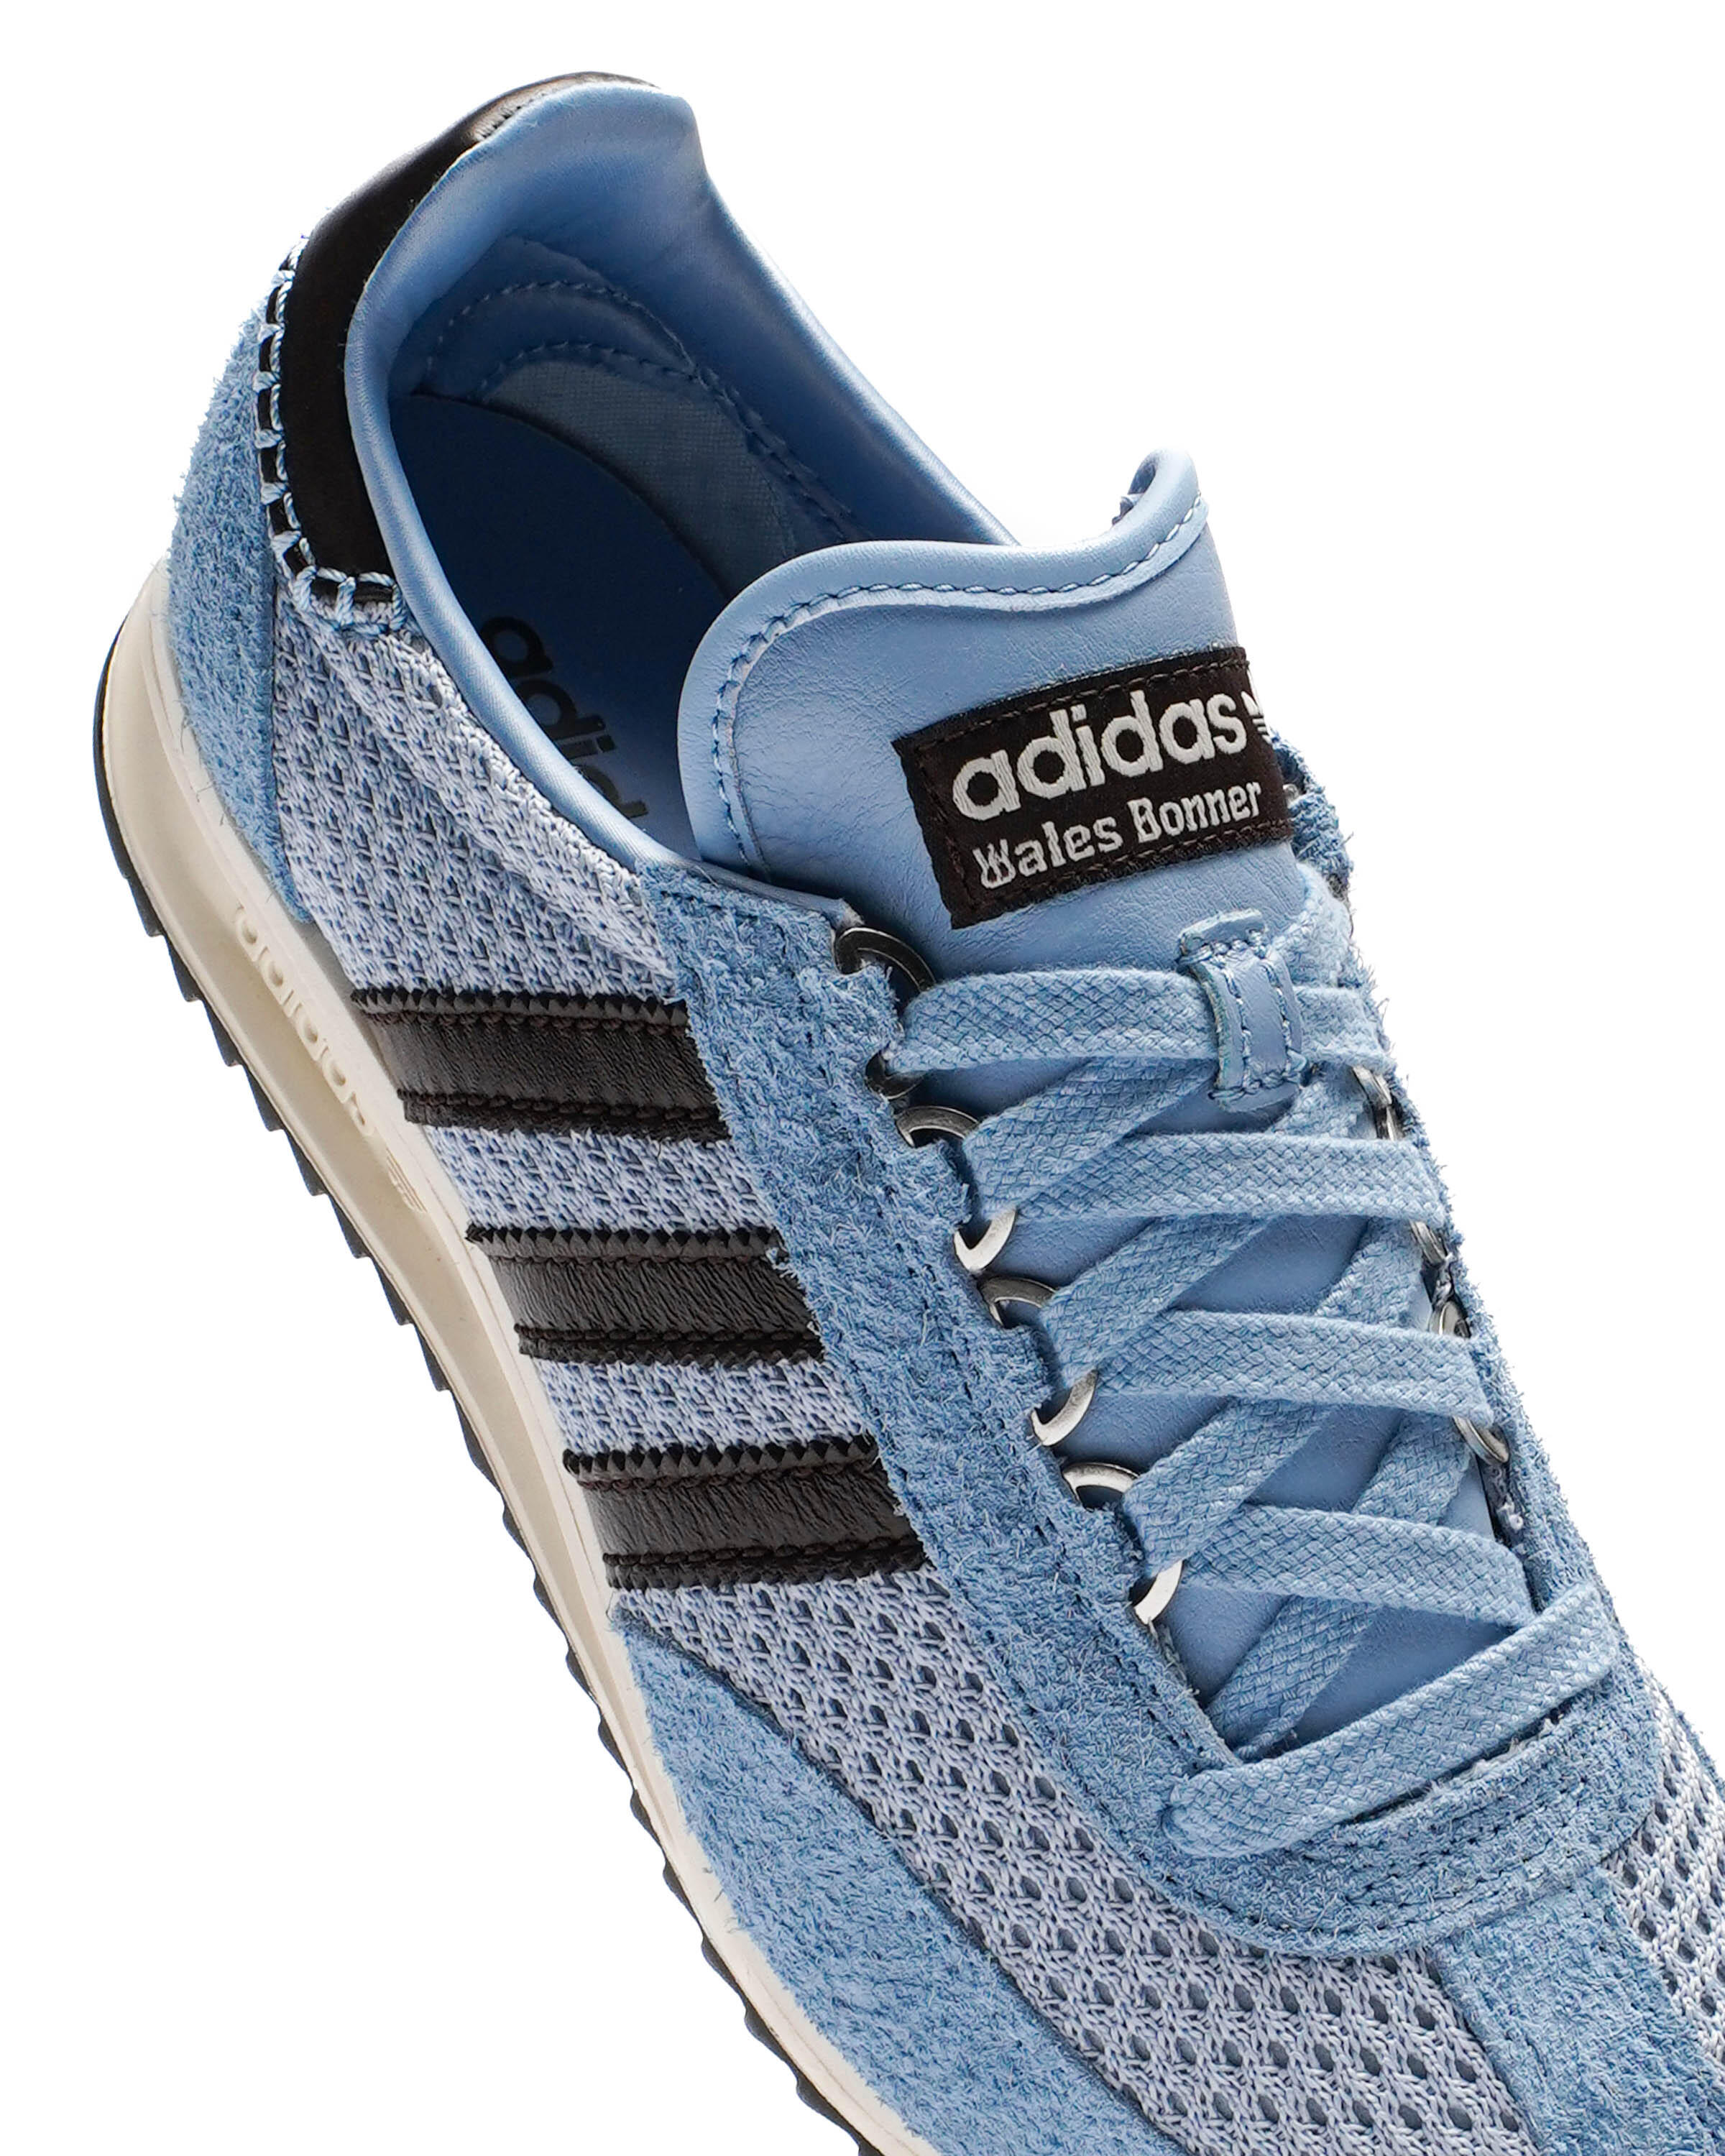 Adidas Originals x Wales Bonner  SL76